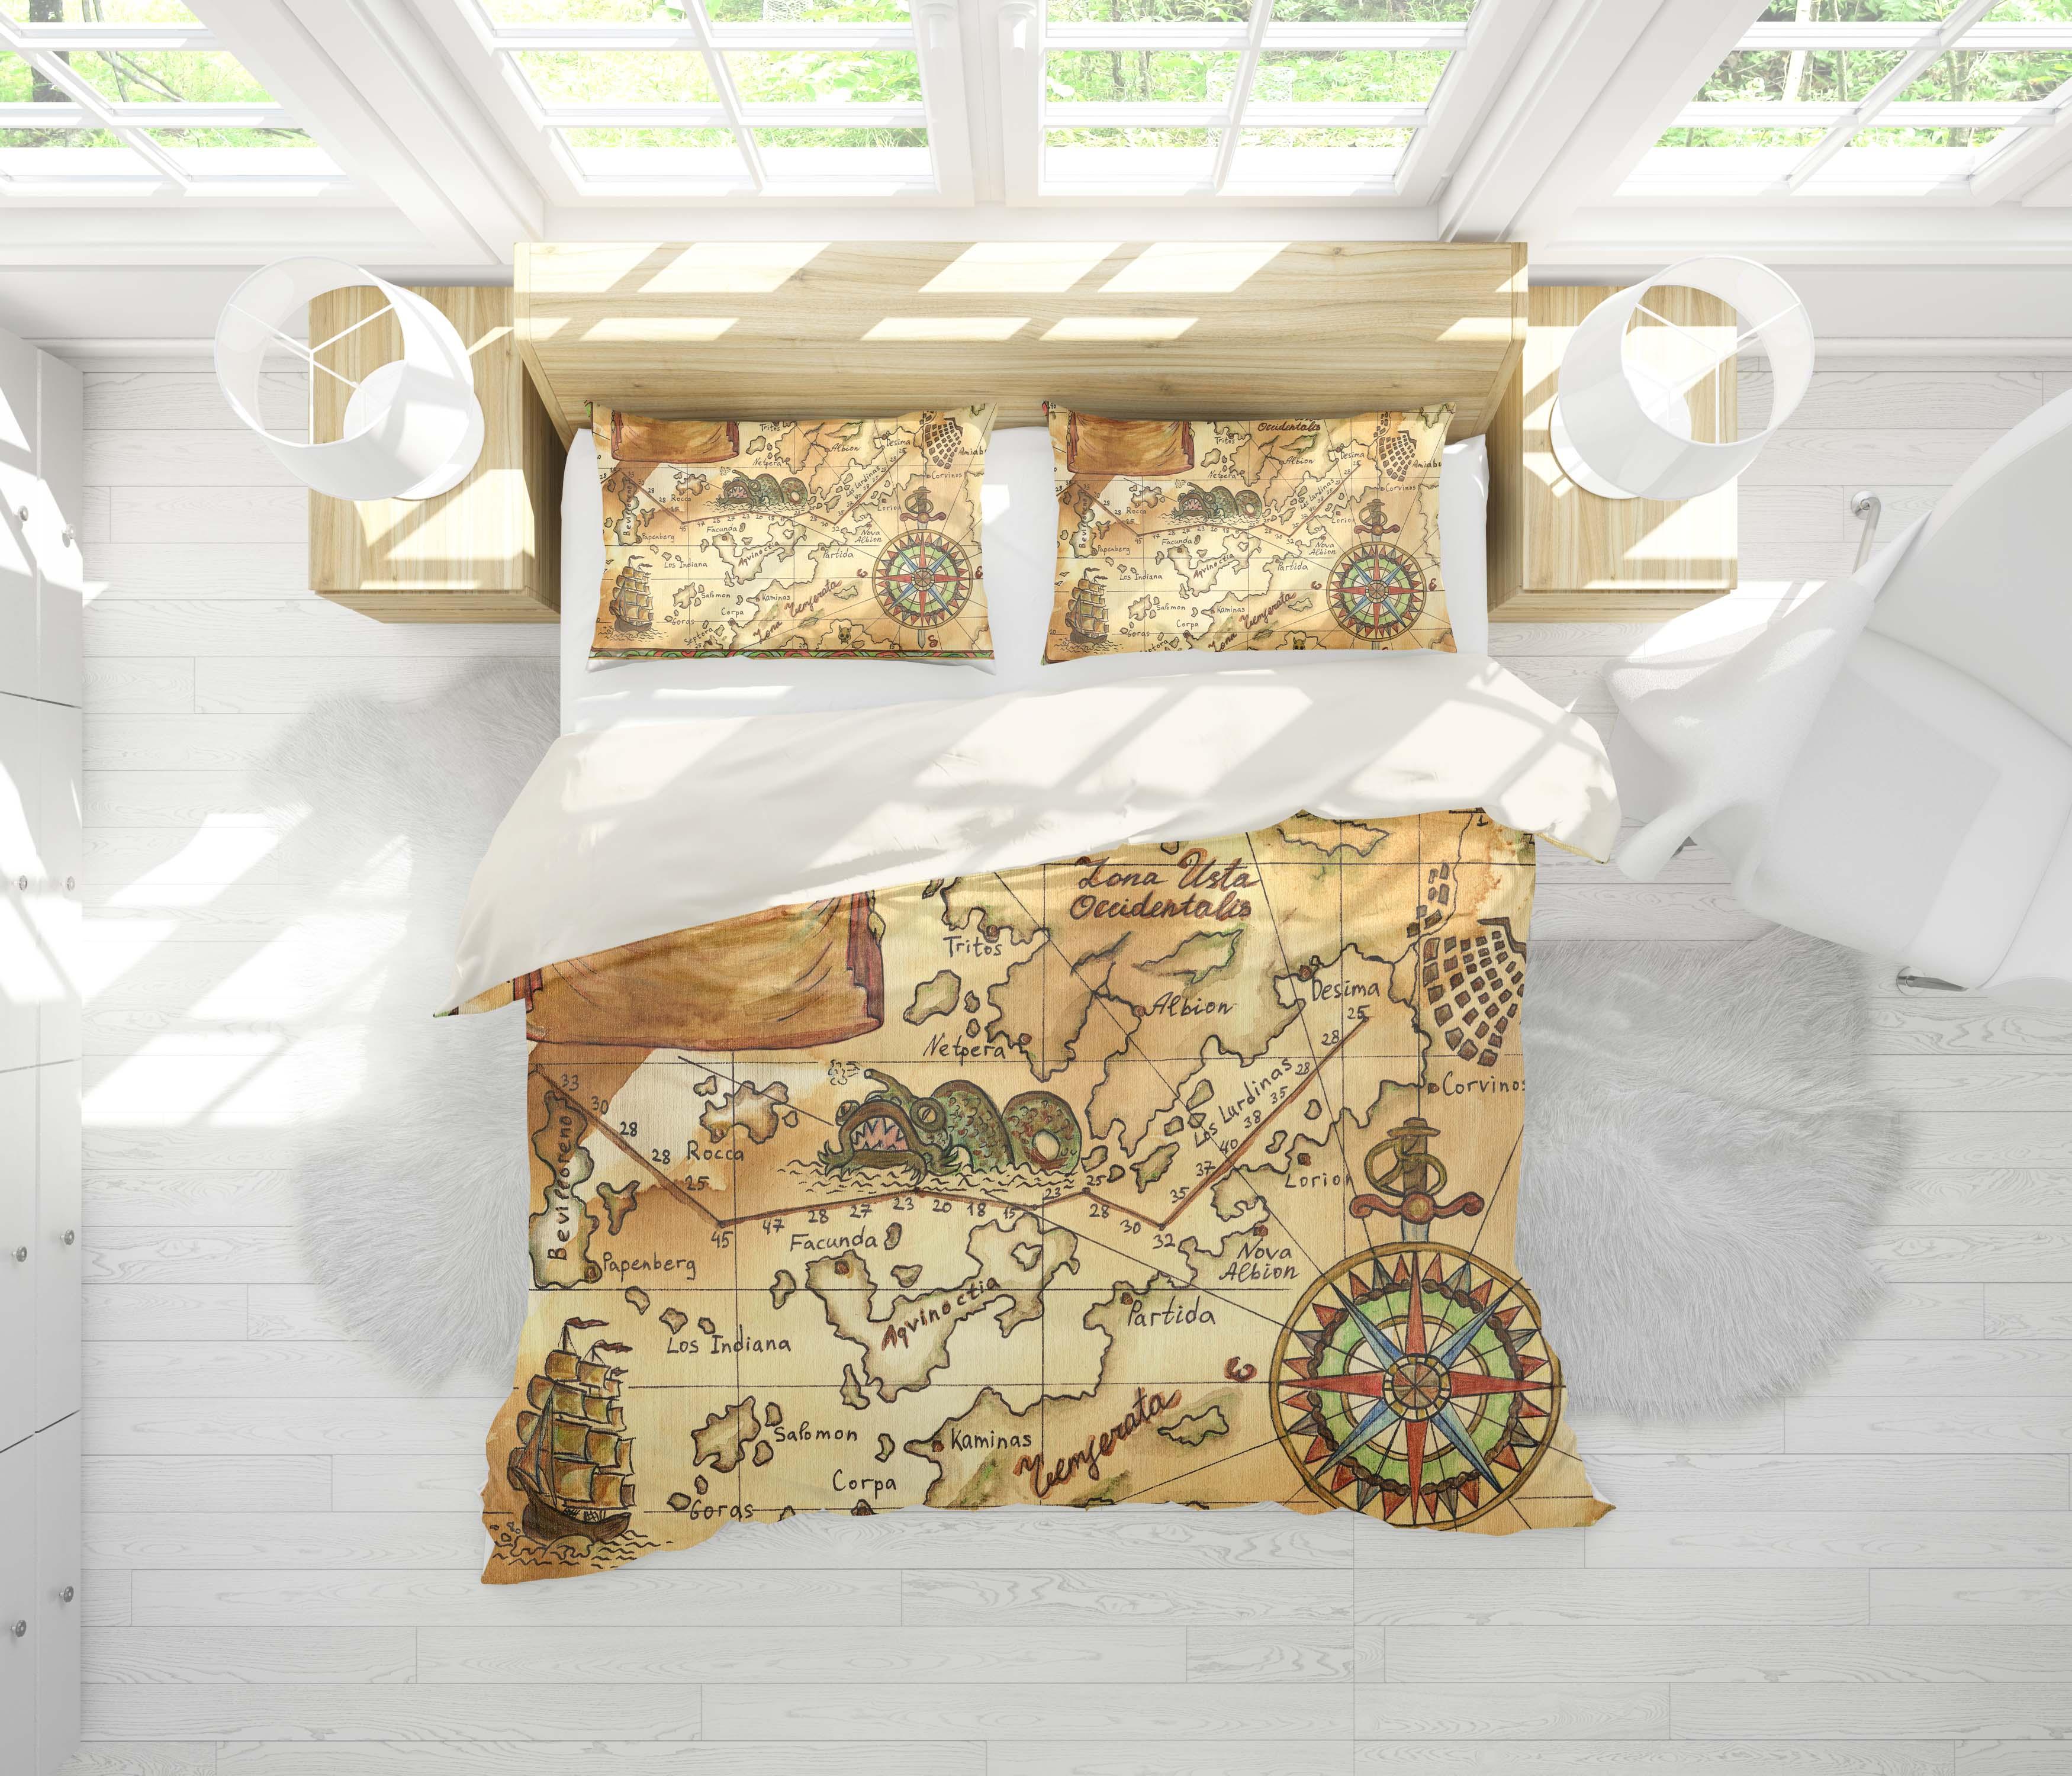 3D Retro Navigation Map Quilt Cover Set Bedding Set Pillowcases 18- Jess Art Decoration